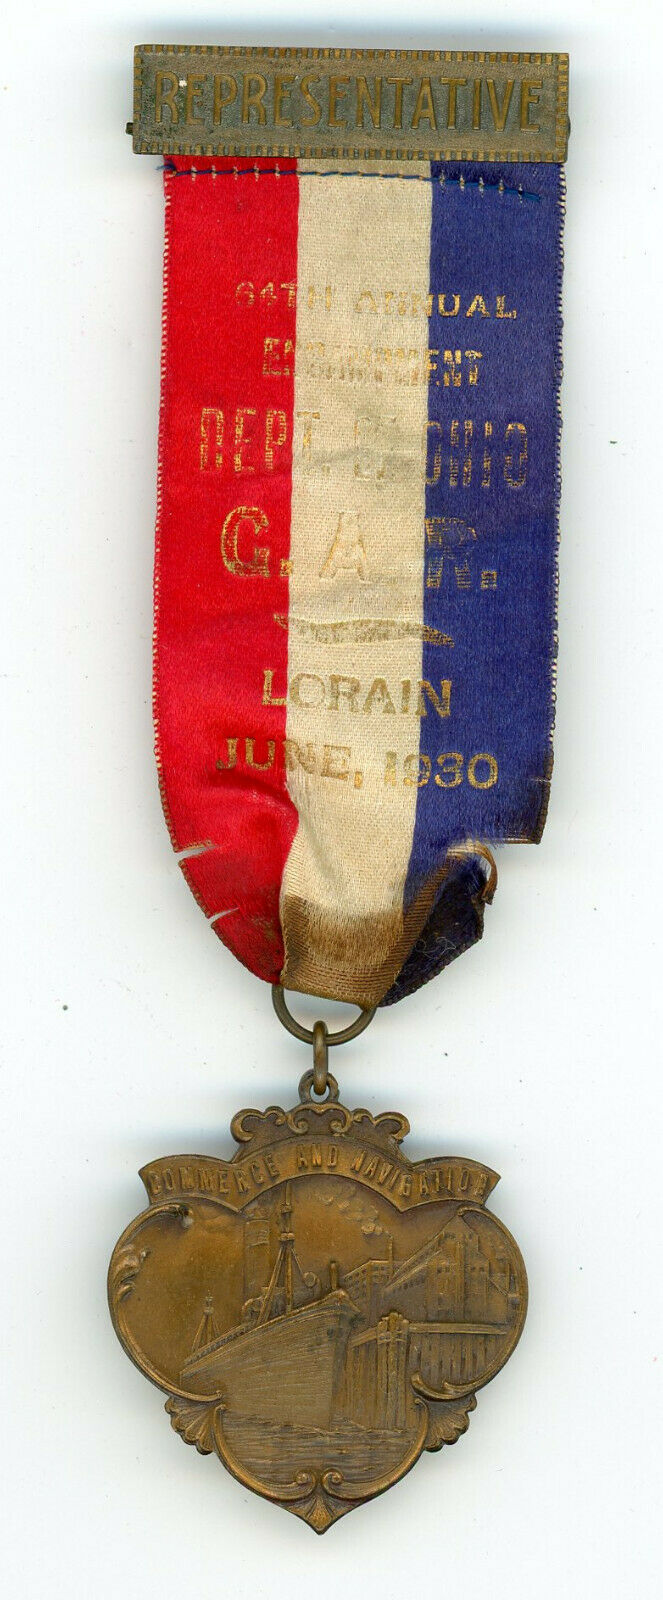 G.a.r. - Grand Army Of The Republic – Gar Lorain, Ohio 1930 Badge